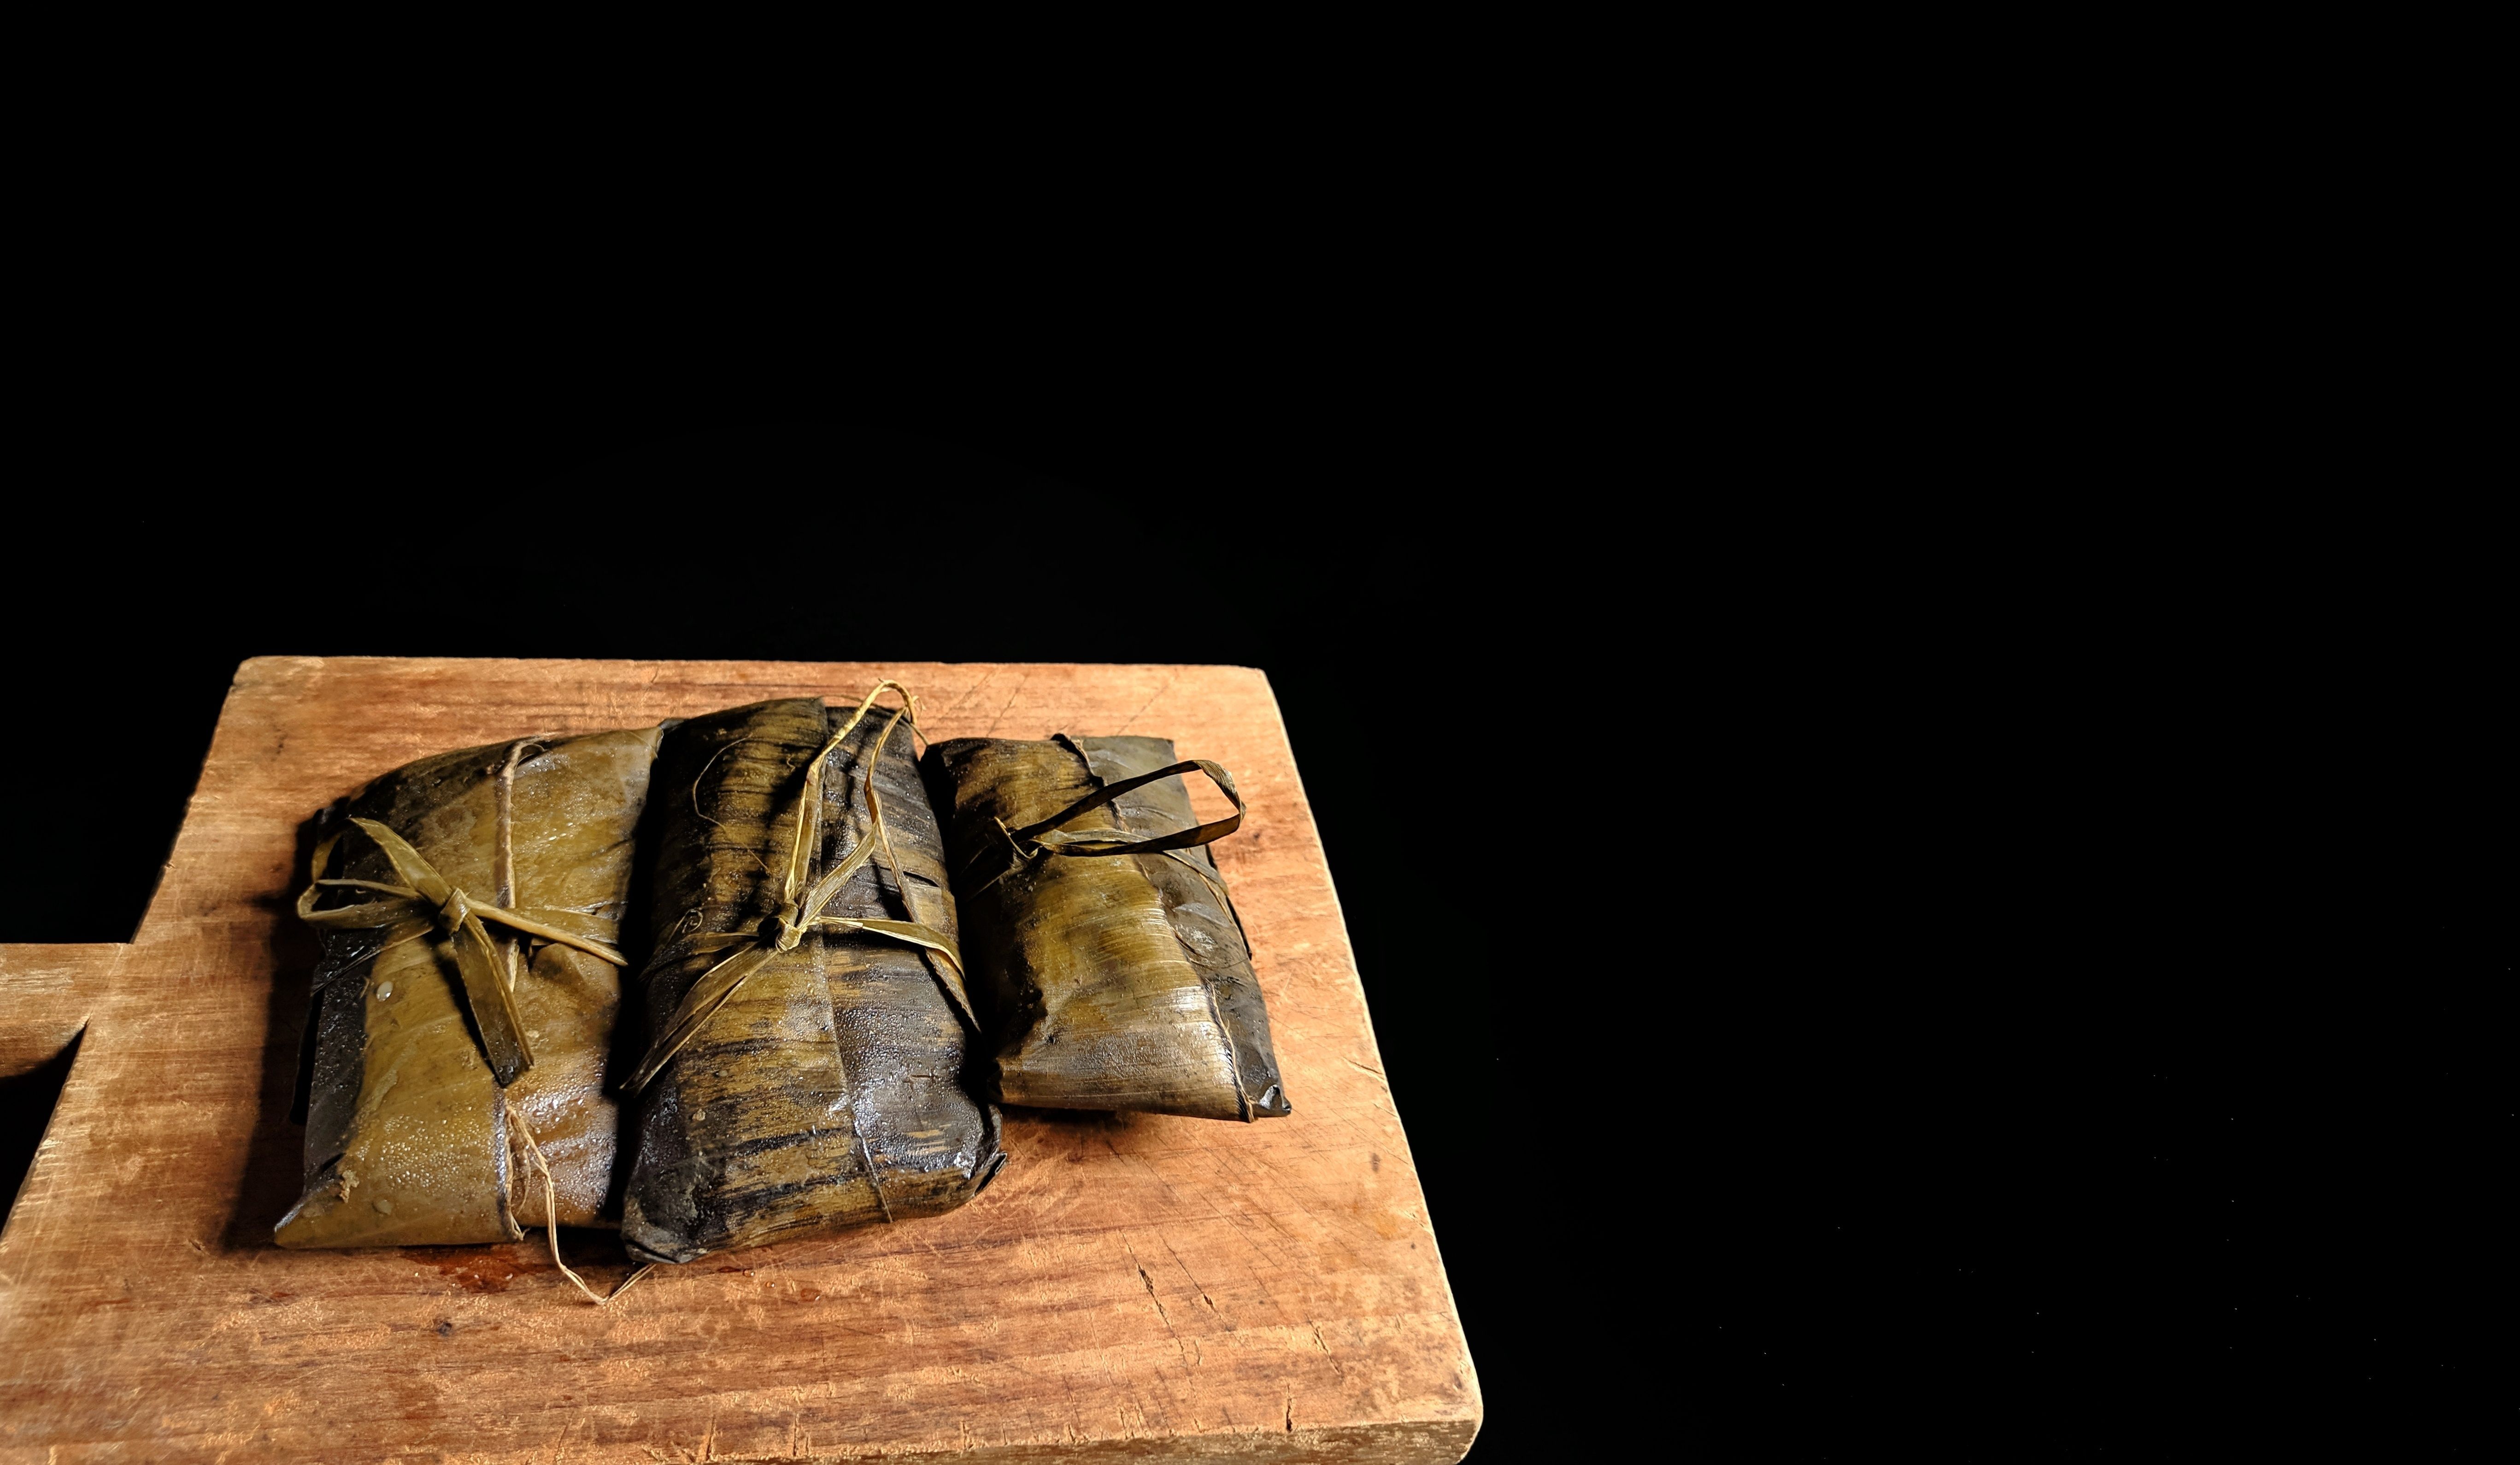 Tamal negro de Guatemala, receta con buen cacao de Centroamérica